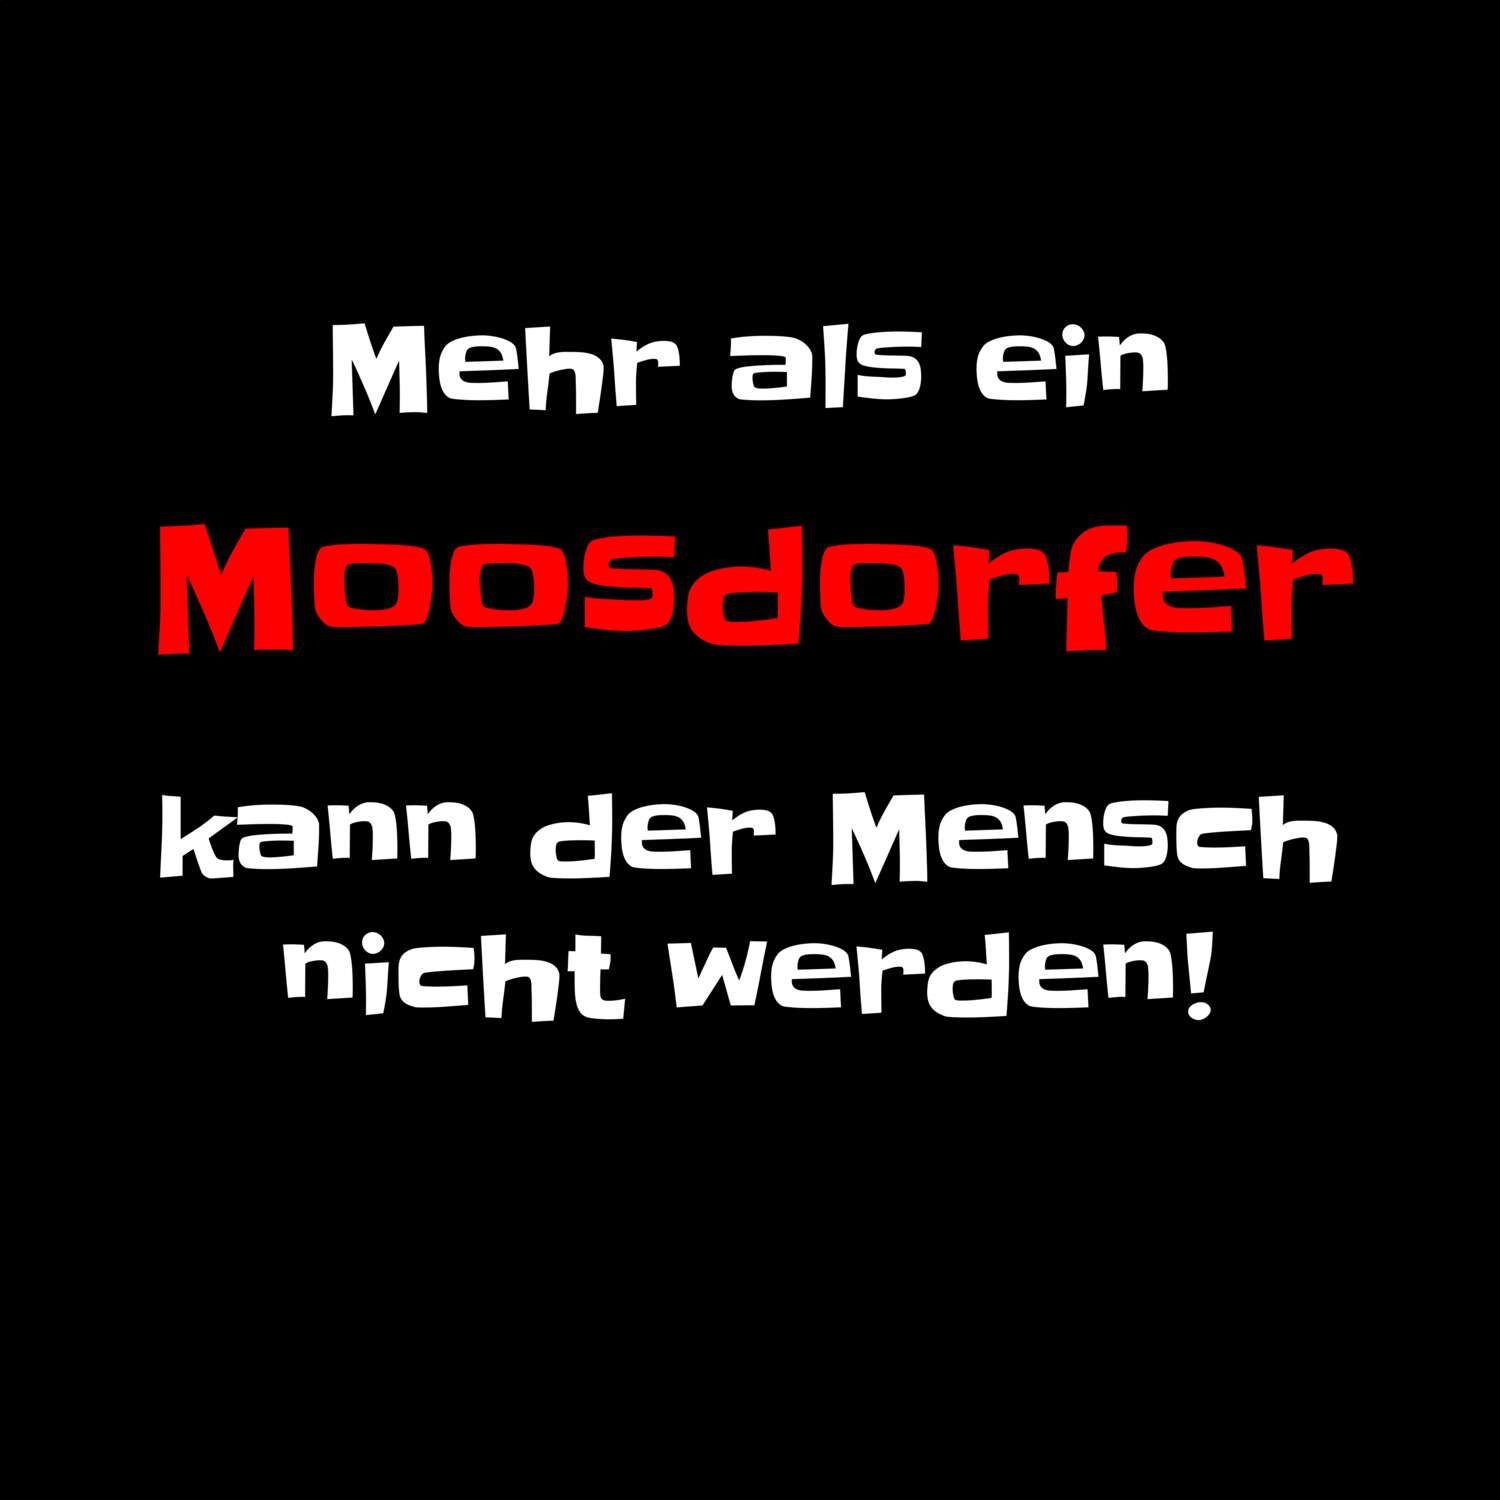 Moosdorf T-Shirt »Mehr als ein«